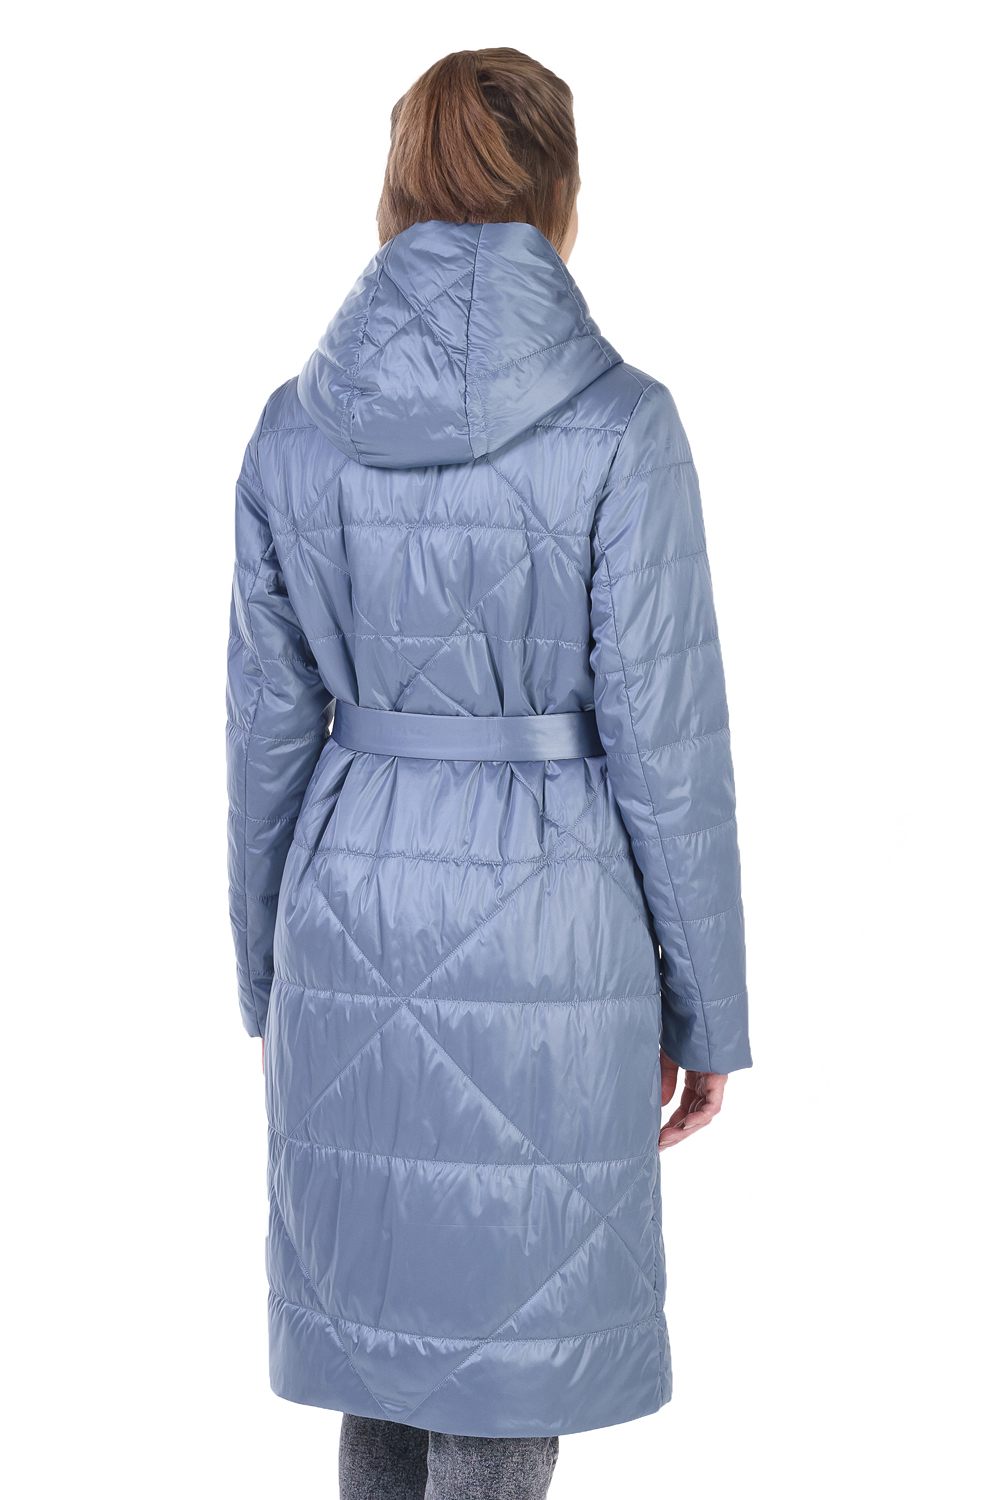 Пальто женское OHARA CC-21700 голубое 42 RU